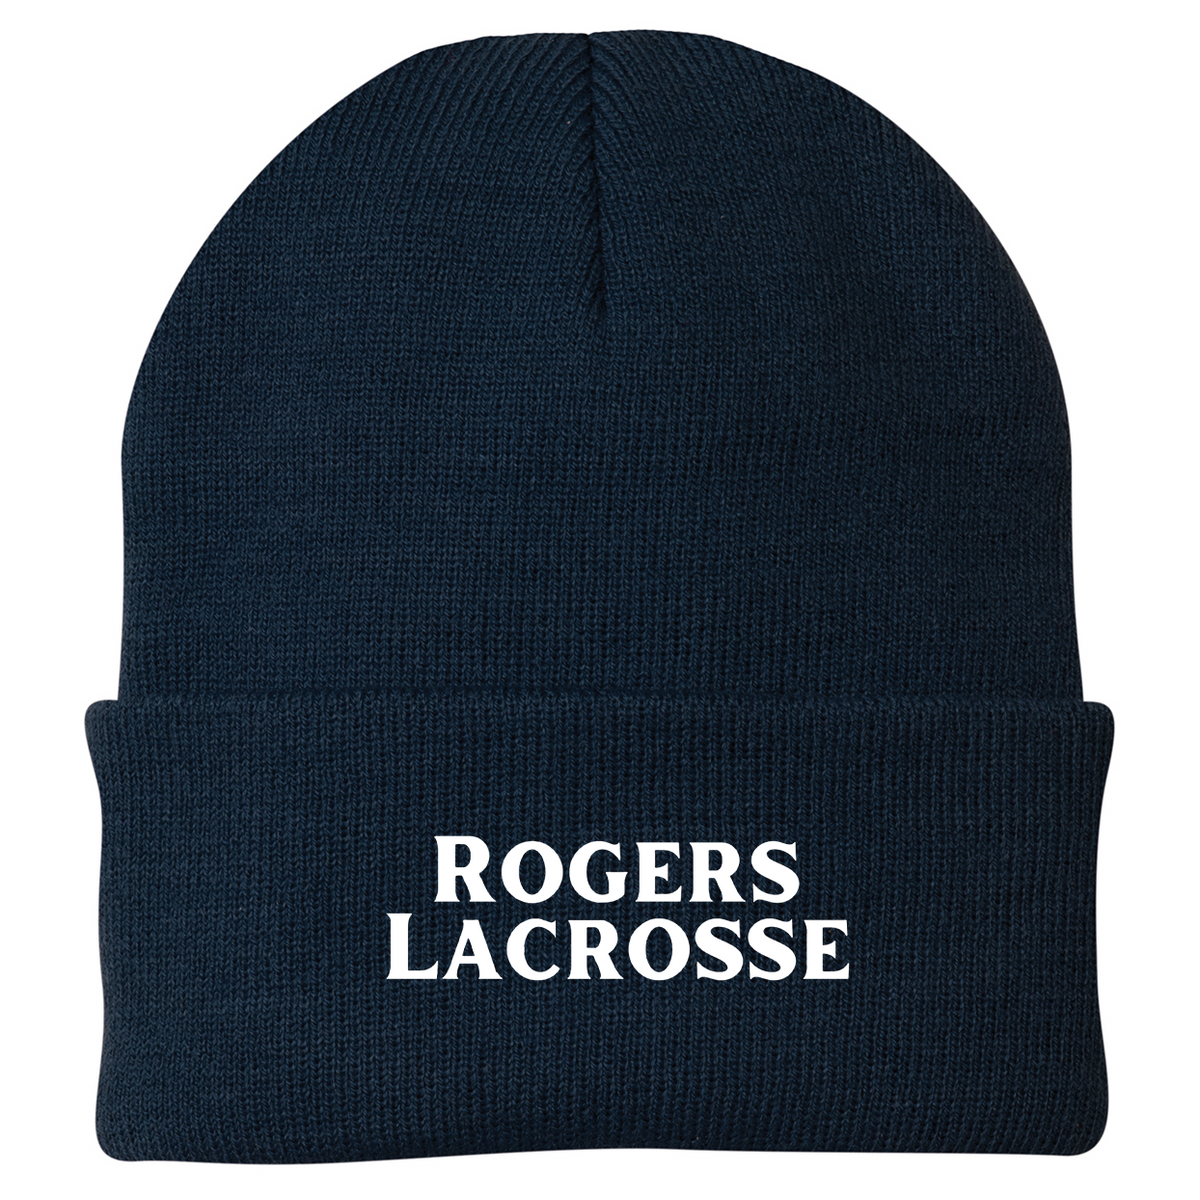 Rogers Lacrosse Knit Beanie